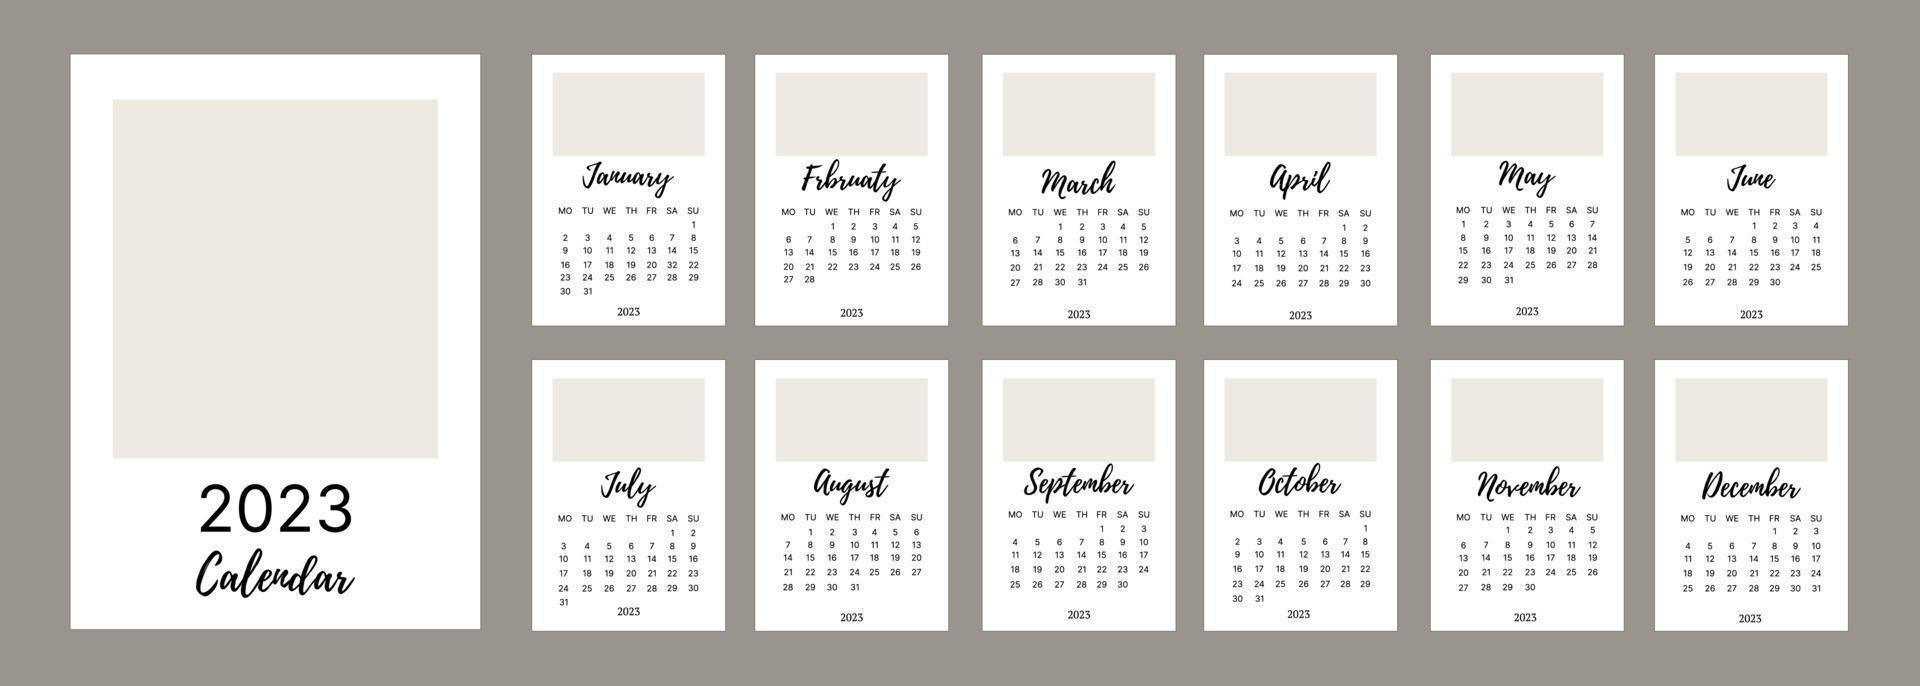 calendário mensal clássico para 2023. um calendário no estilo do minimalismo de forma quadrada. modelo de calendário. vetor